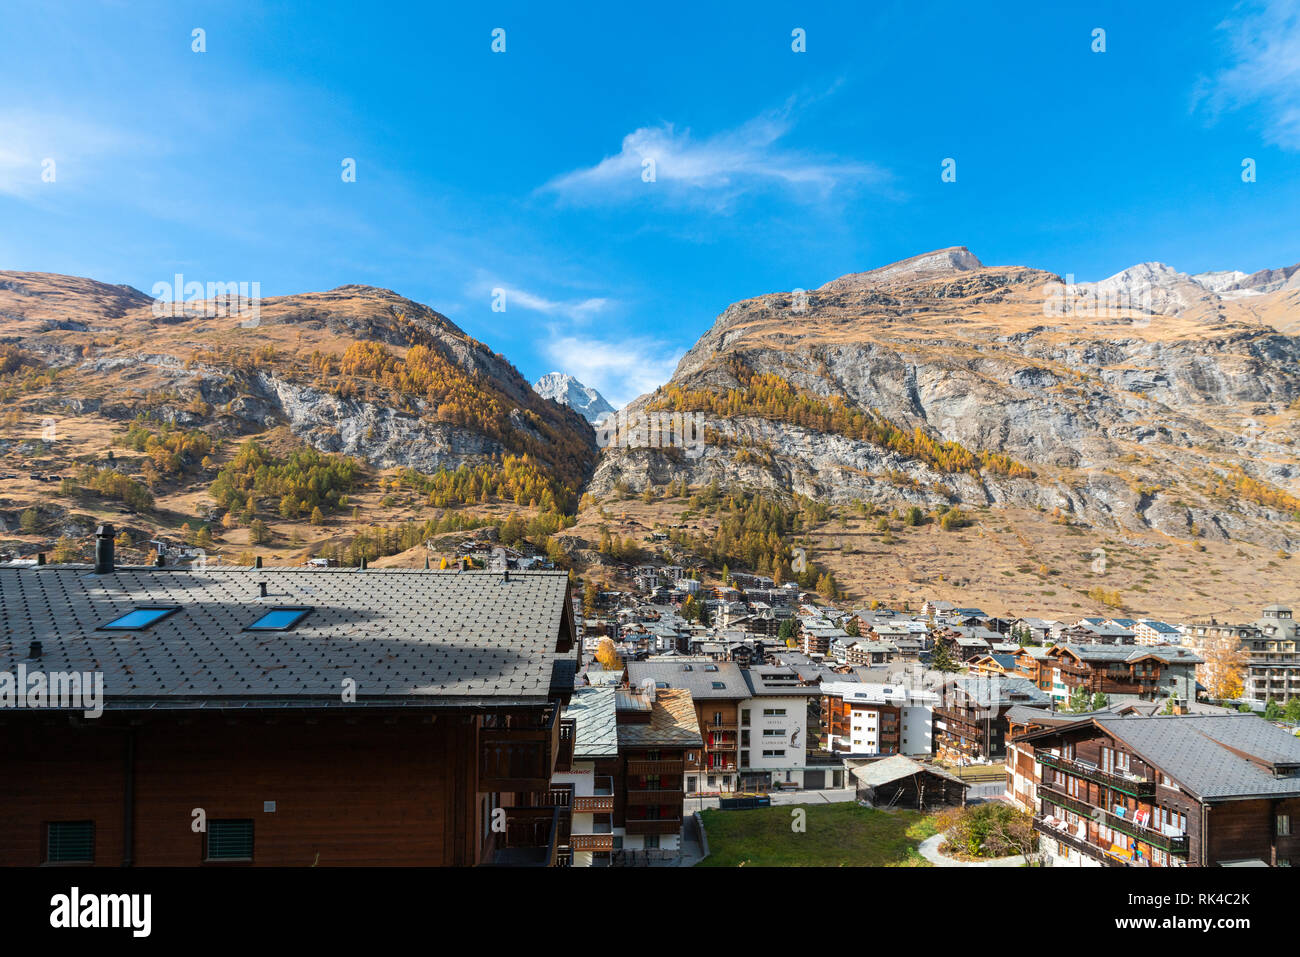 Le village de Zermatt entouré de pics rocheux et de mélèzes au cours de l'automne, canton du Valais, Suisse Banque D'Images